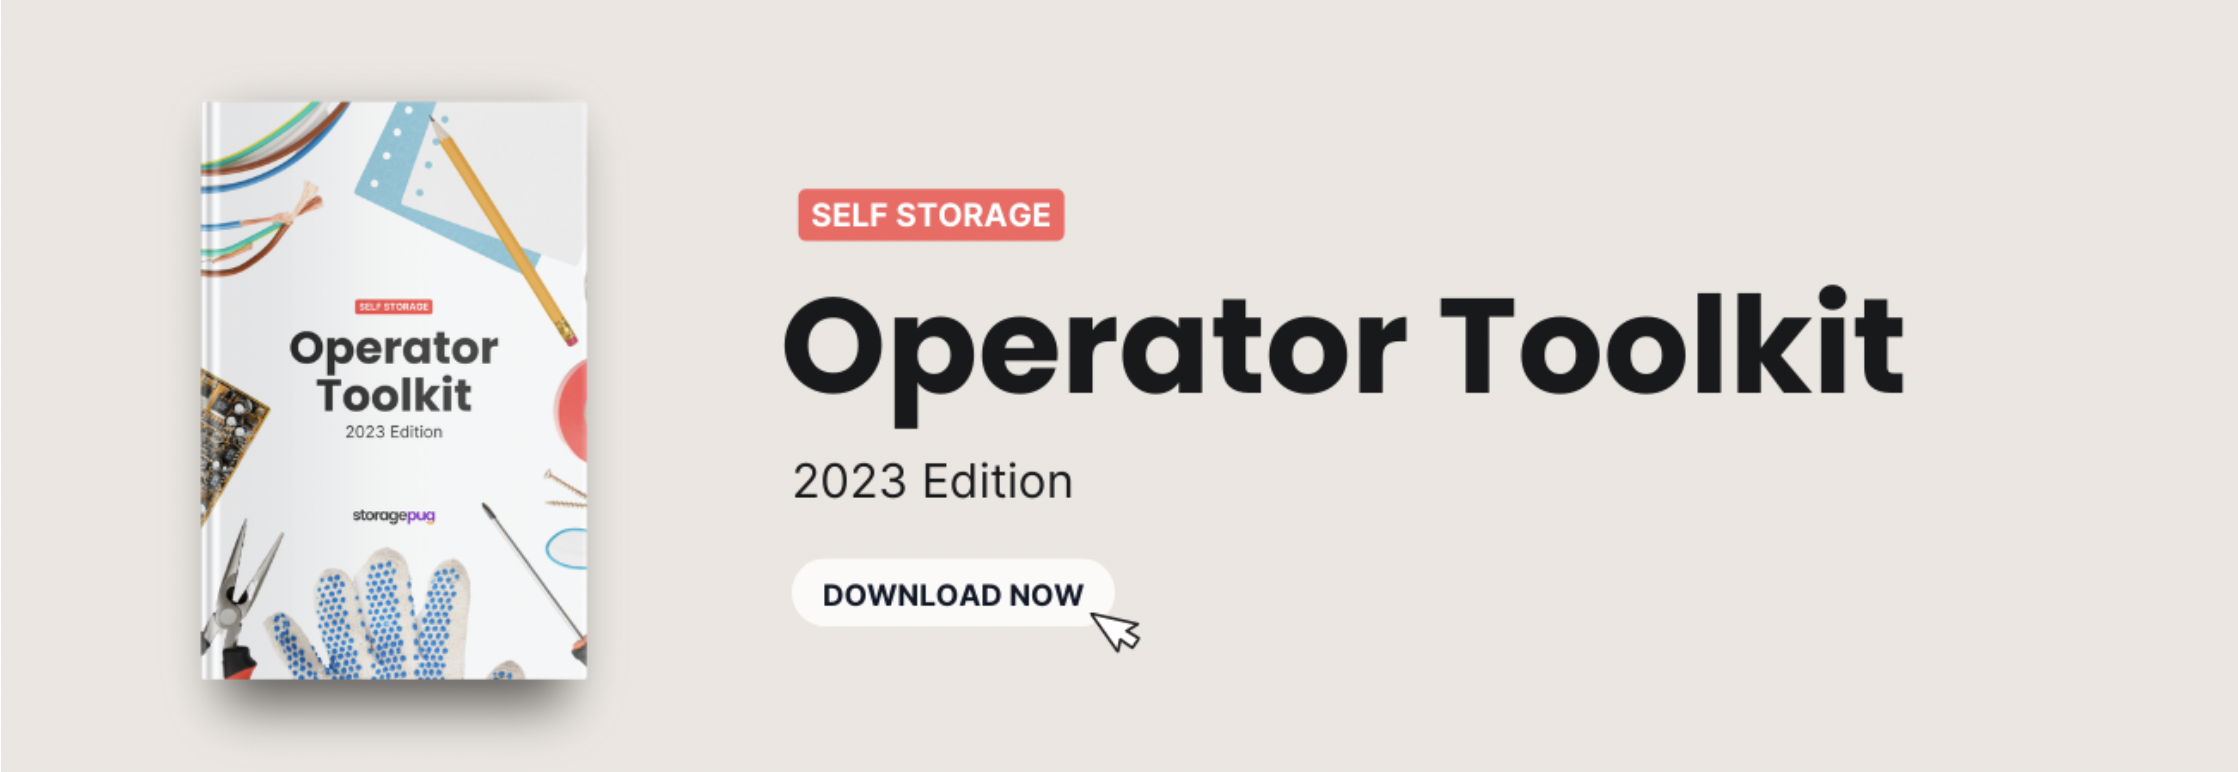 Operator Toolkit